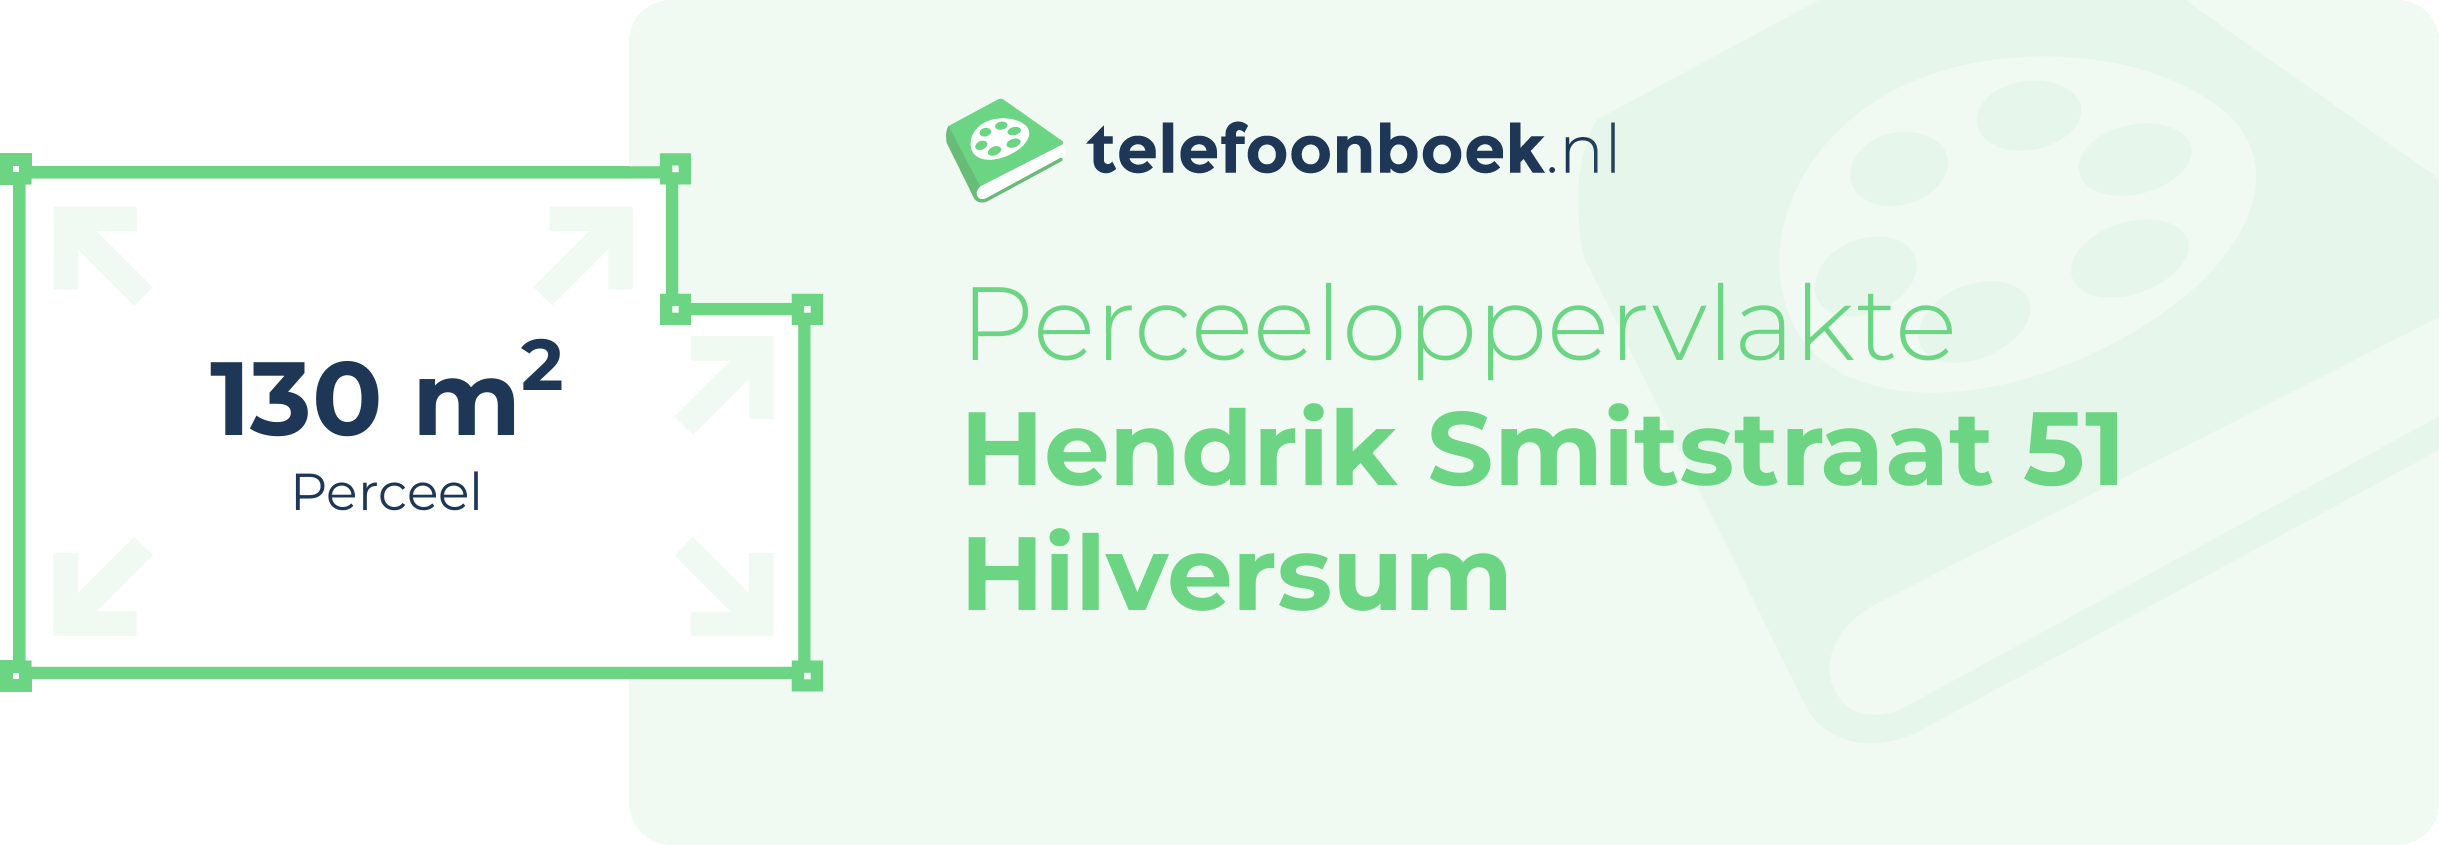 Perceeloppervlakte Hendrik Smitstraat 51 Hilversum